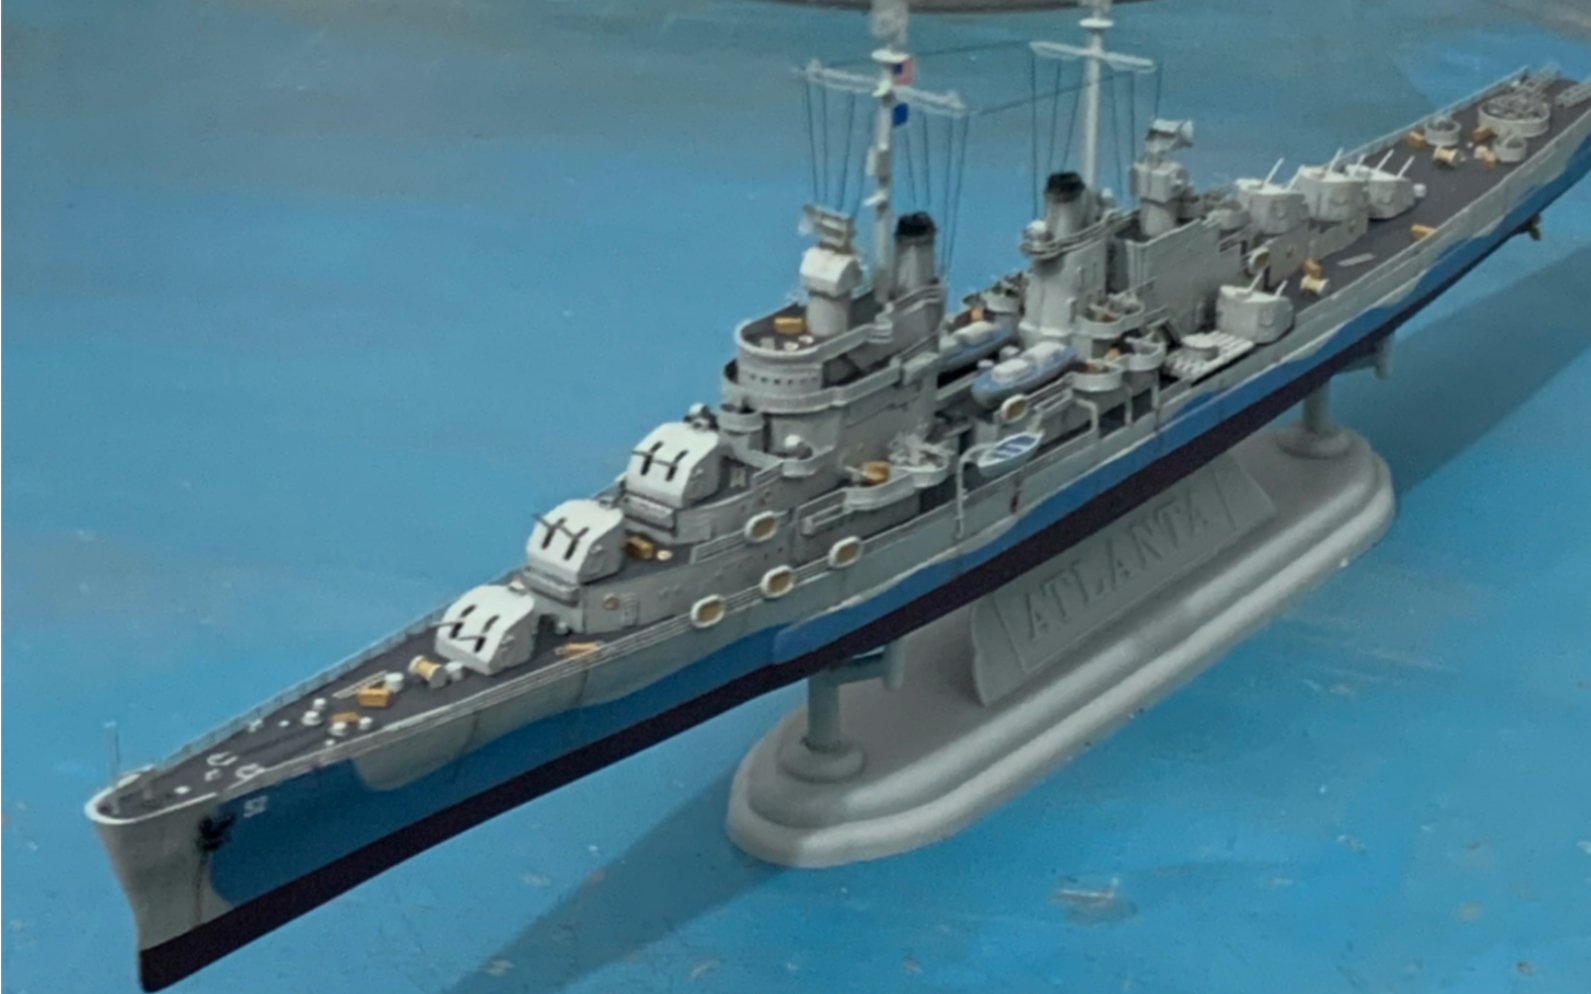 1/700烂龙(威龙)板件,亚特兰大级轻巡洋舰配五星改造